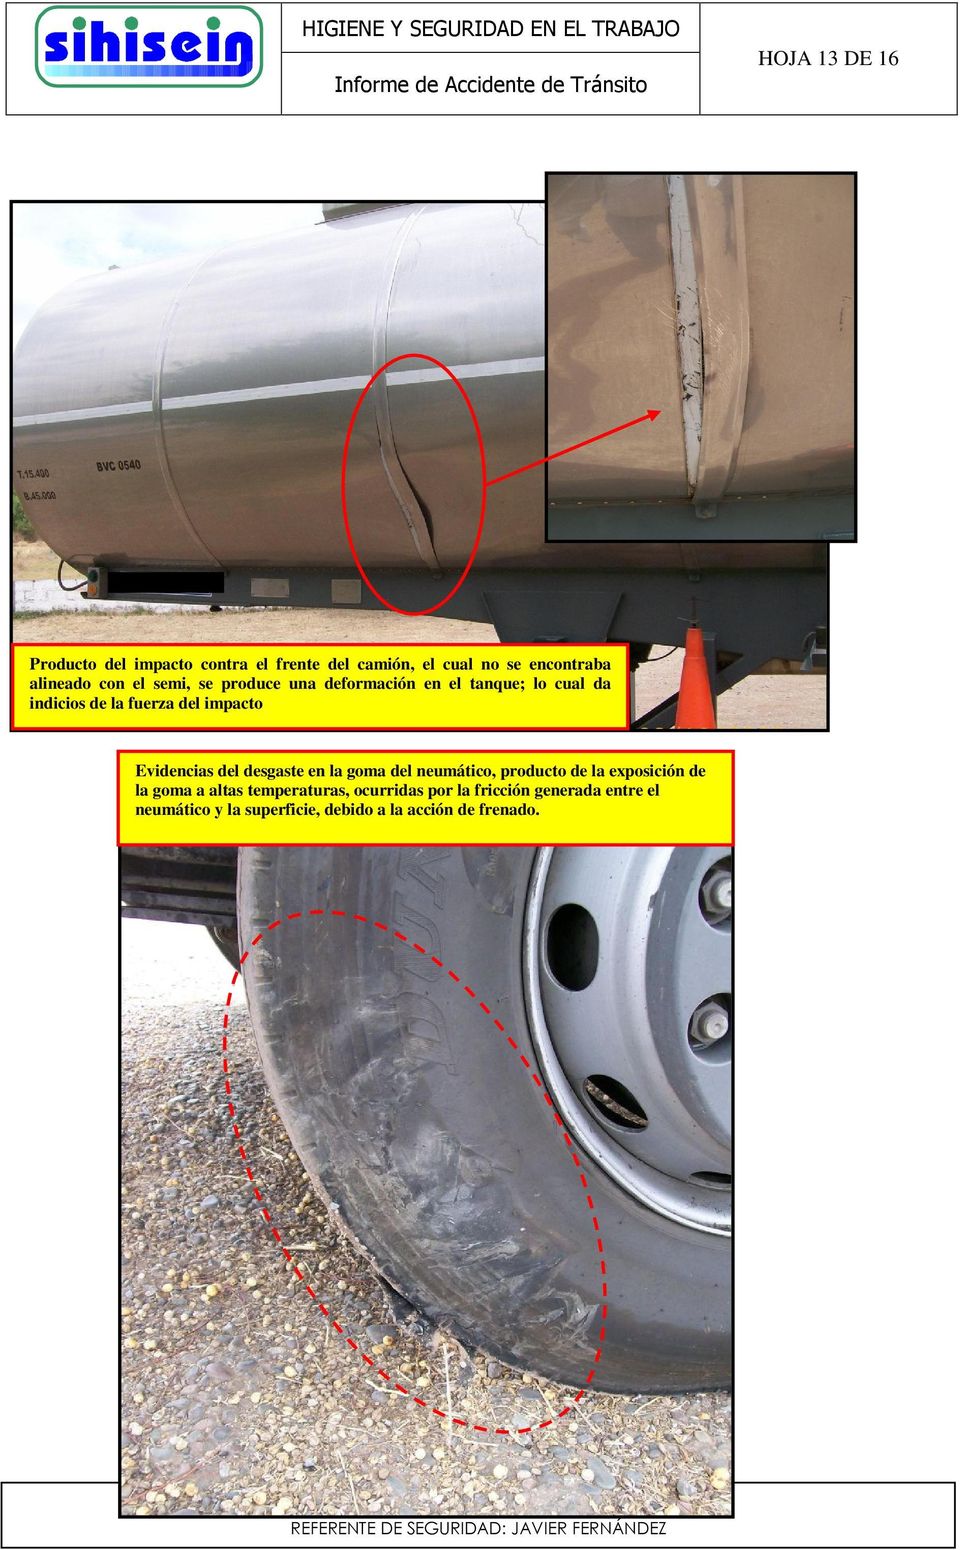 Evidencias del desgaste en la goma del neumático, producto de la exposición de la goma a altas